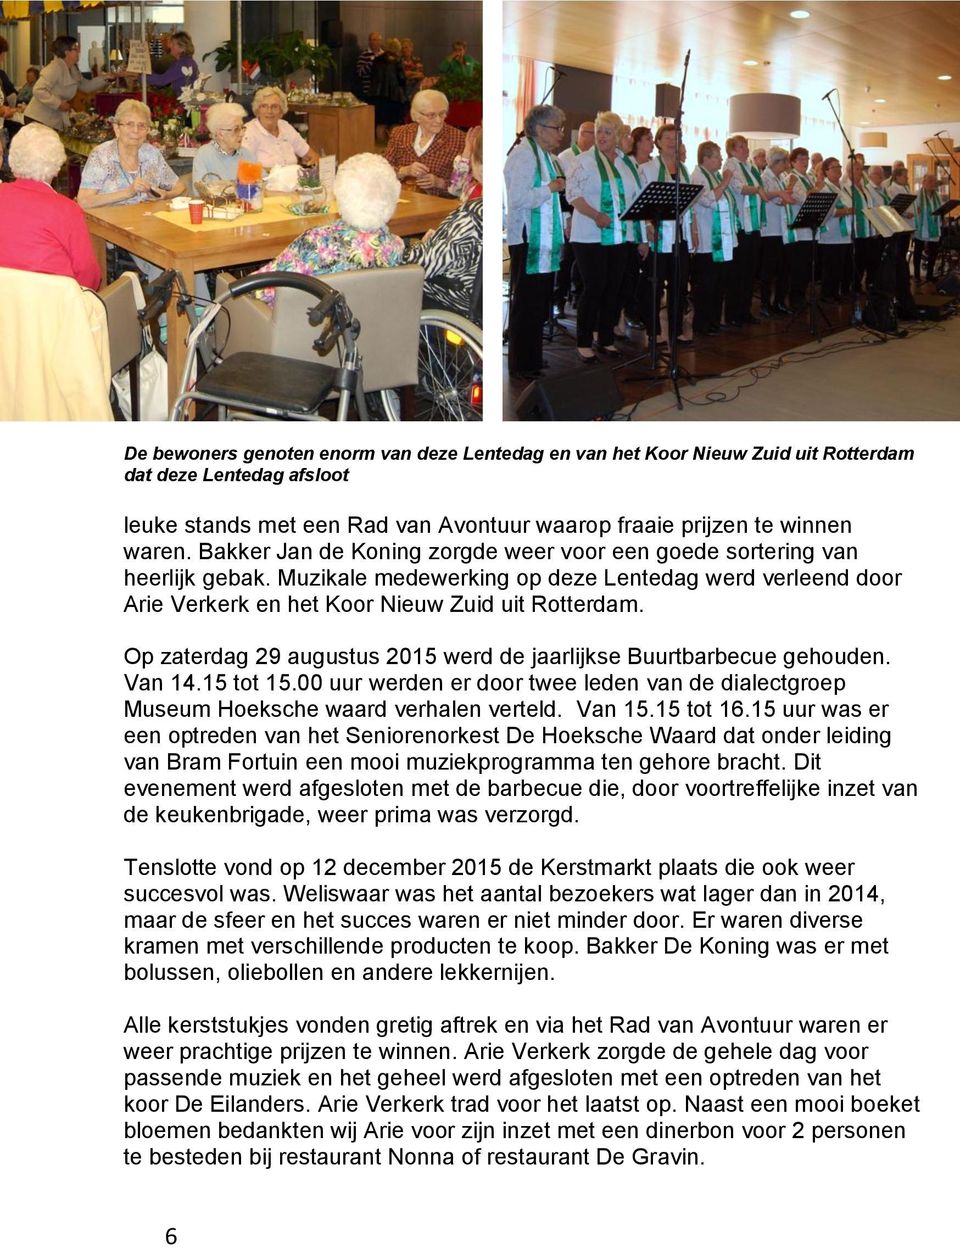 Op zaterdag 29 augustus 2015 werd de jaarlijkse Buurtbarbecue gehouden. Van 14.15 tot 15.00 uur werden er door twee leden van de dialectgroep Museum Hoeksche waard verhalen verteld. Van 15.15 tot 16.